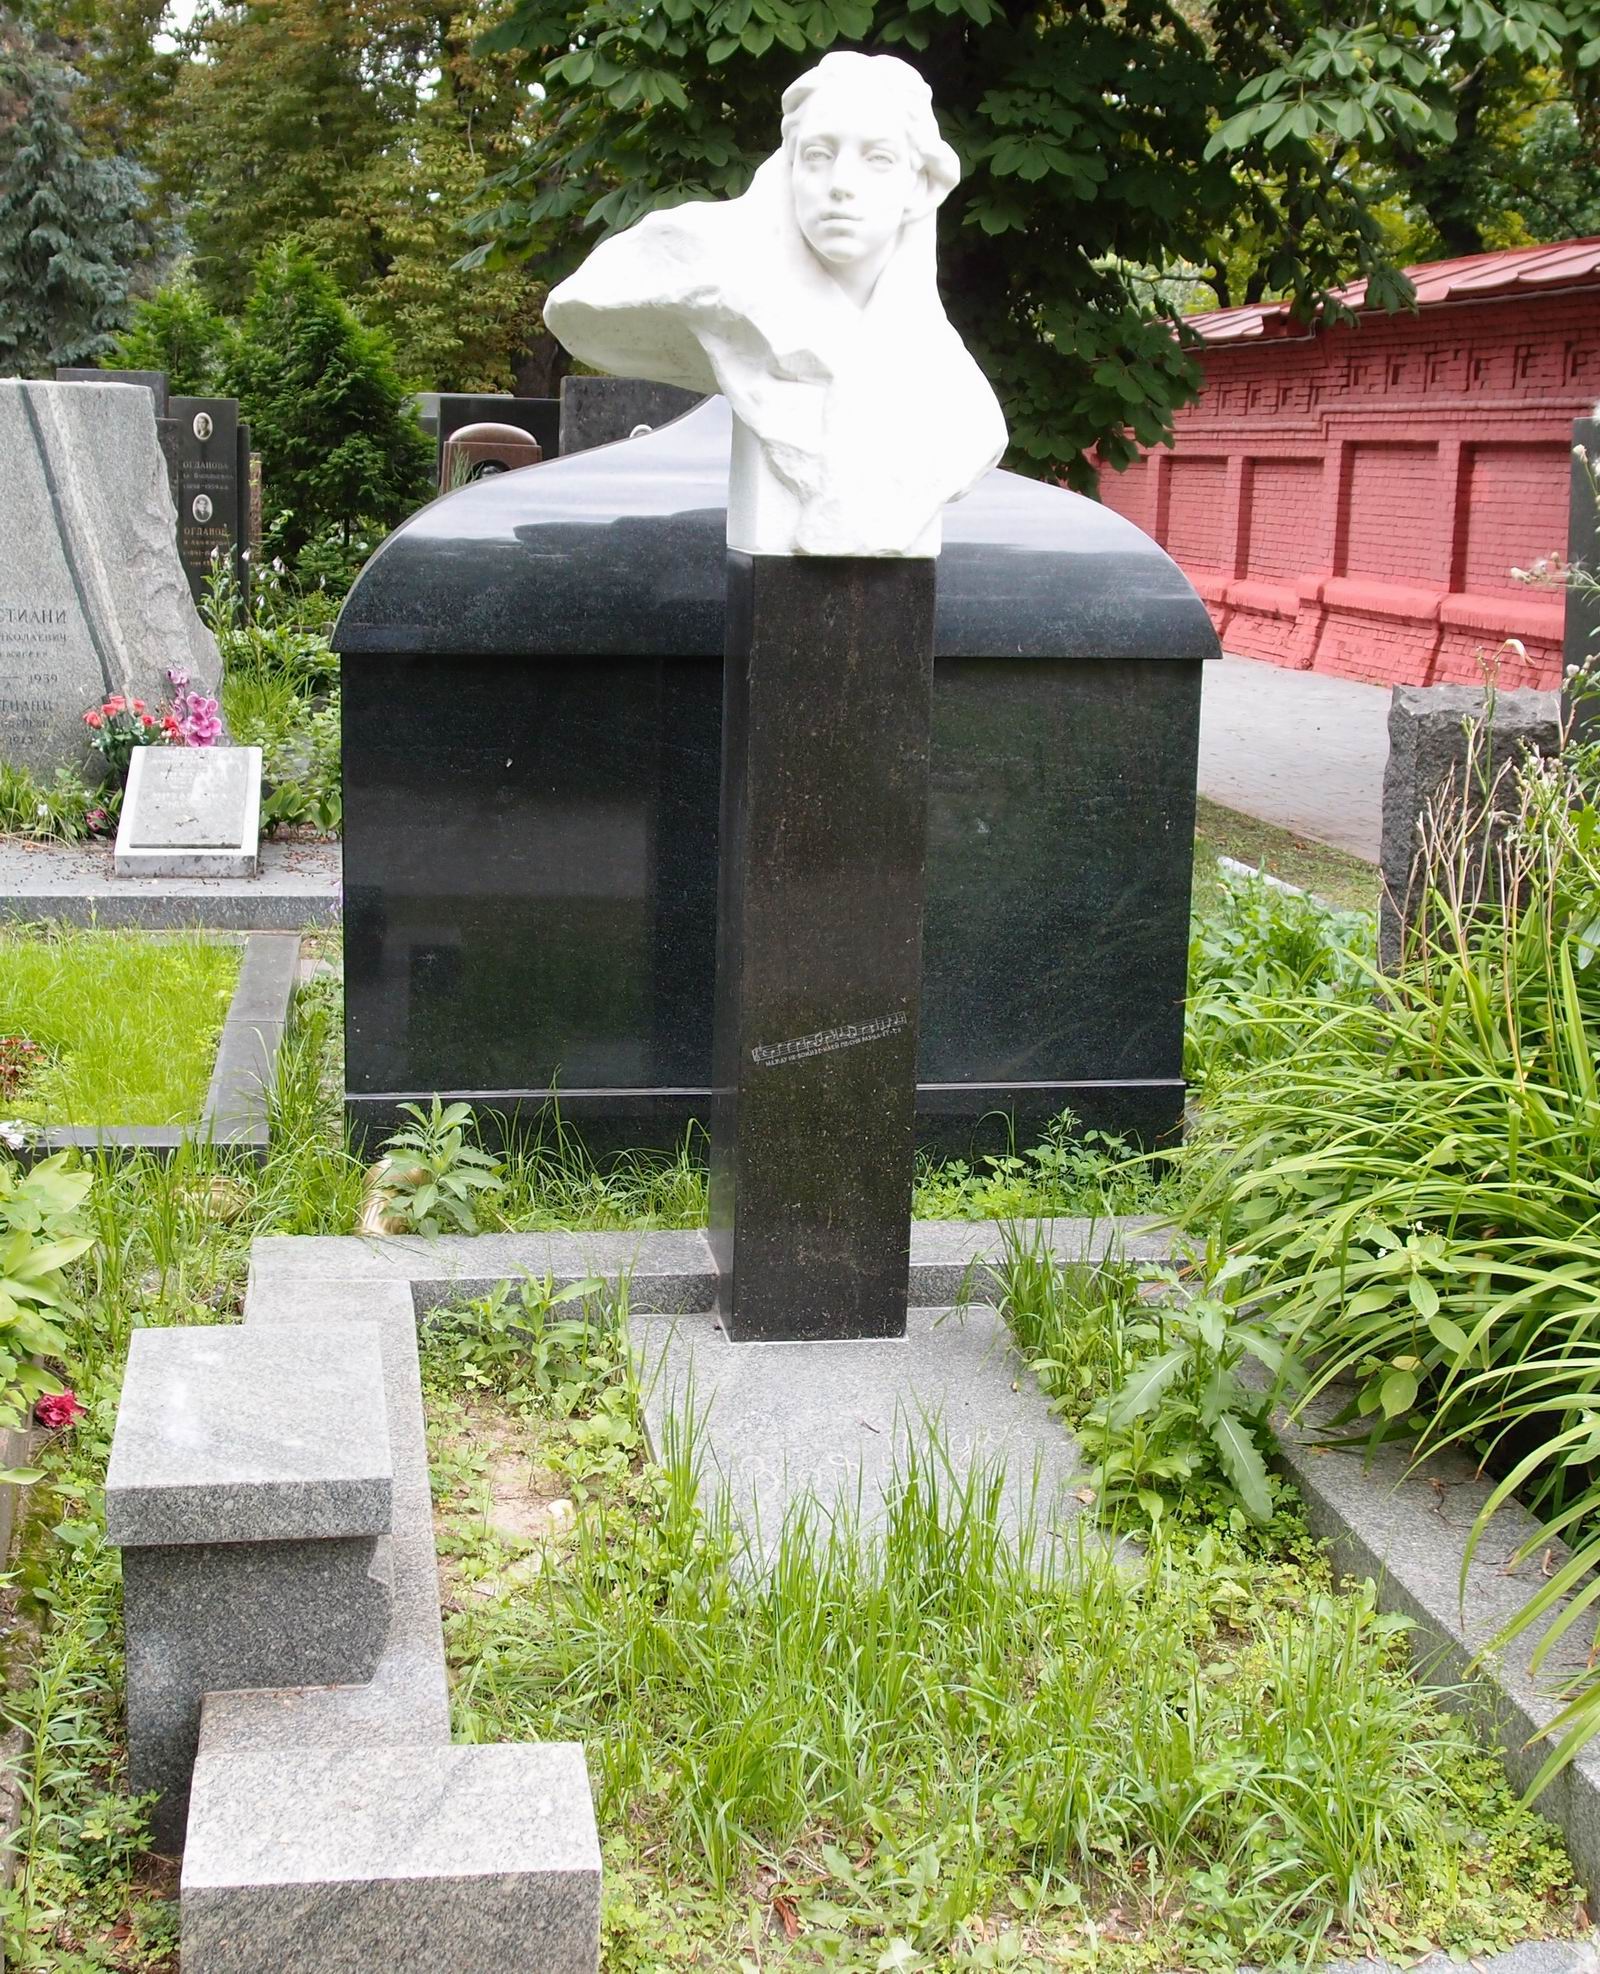 Памятник на могиле Лодий З.П. (1886–1957), ск. Е.Белашова, арх. Л.Холмянский, на Новодевичьем кладбище (5–31–2). Нажмите левую кнопку мыши чтобы увидеть фрагмент памятника.